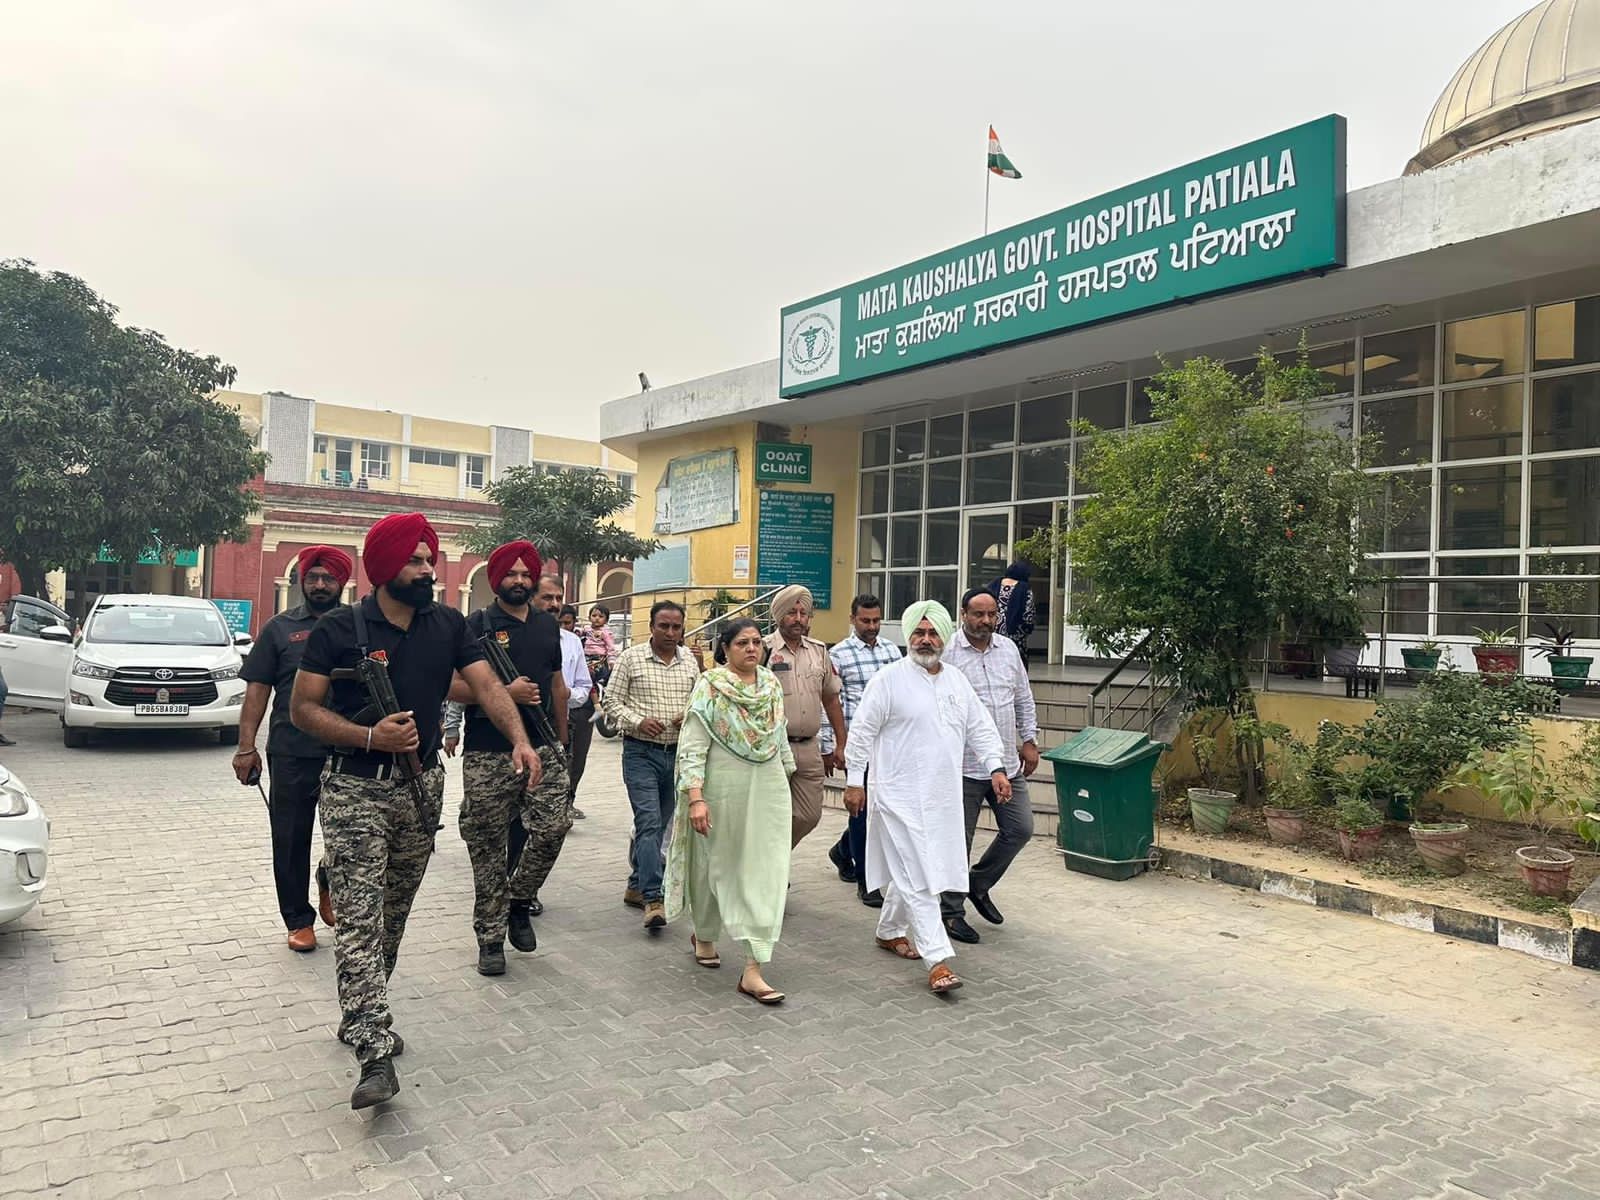 Chetan Singh Jauramajra visited Mata Kaushalya Hospital, Patiala